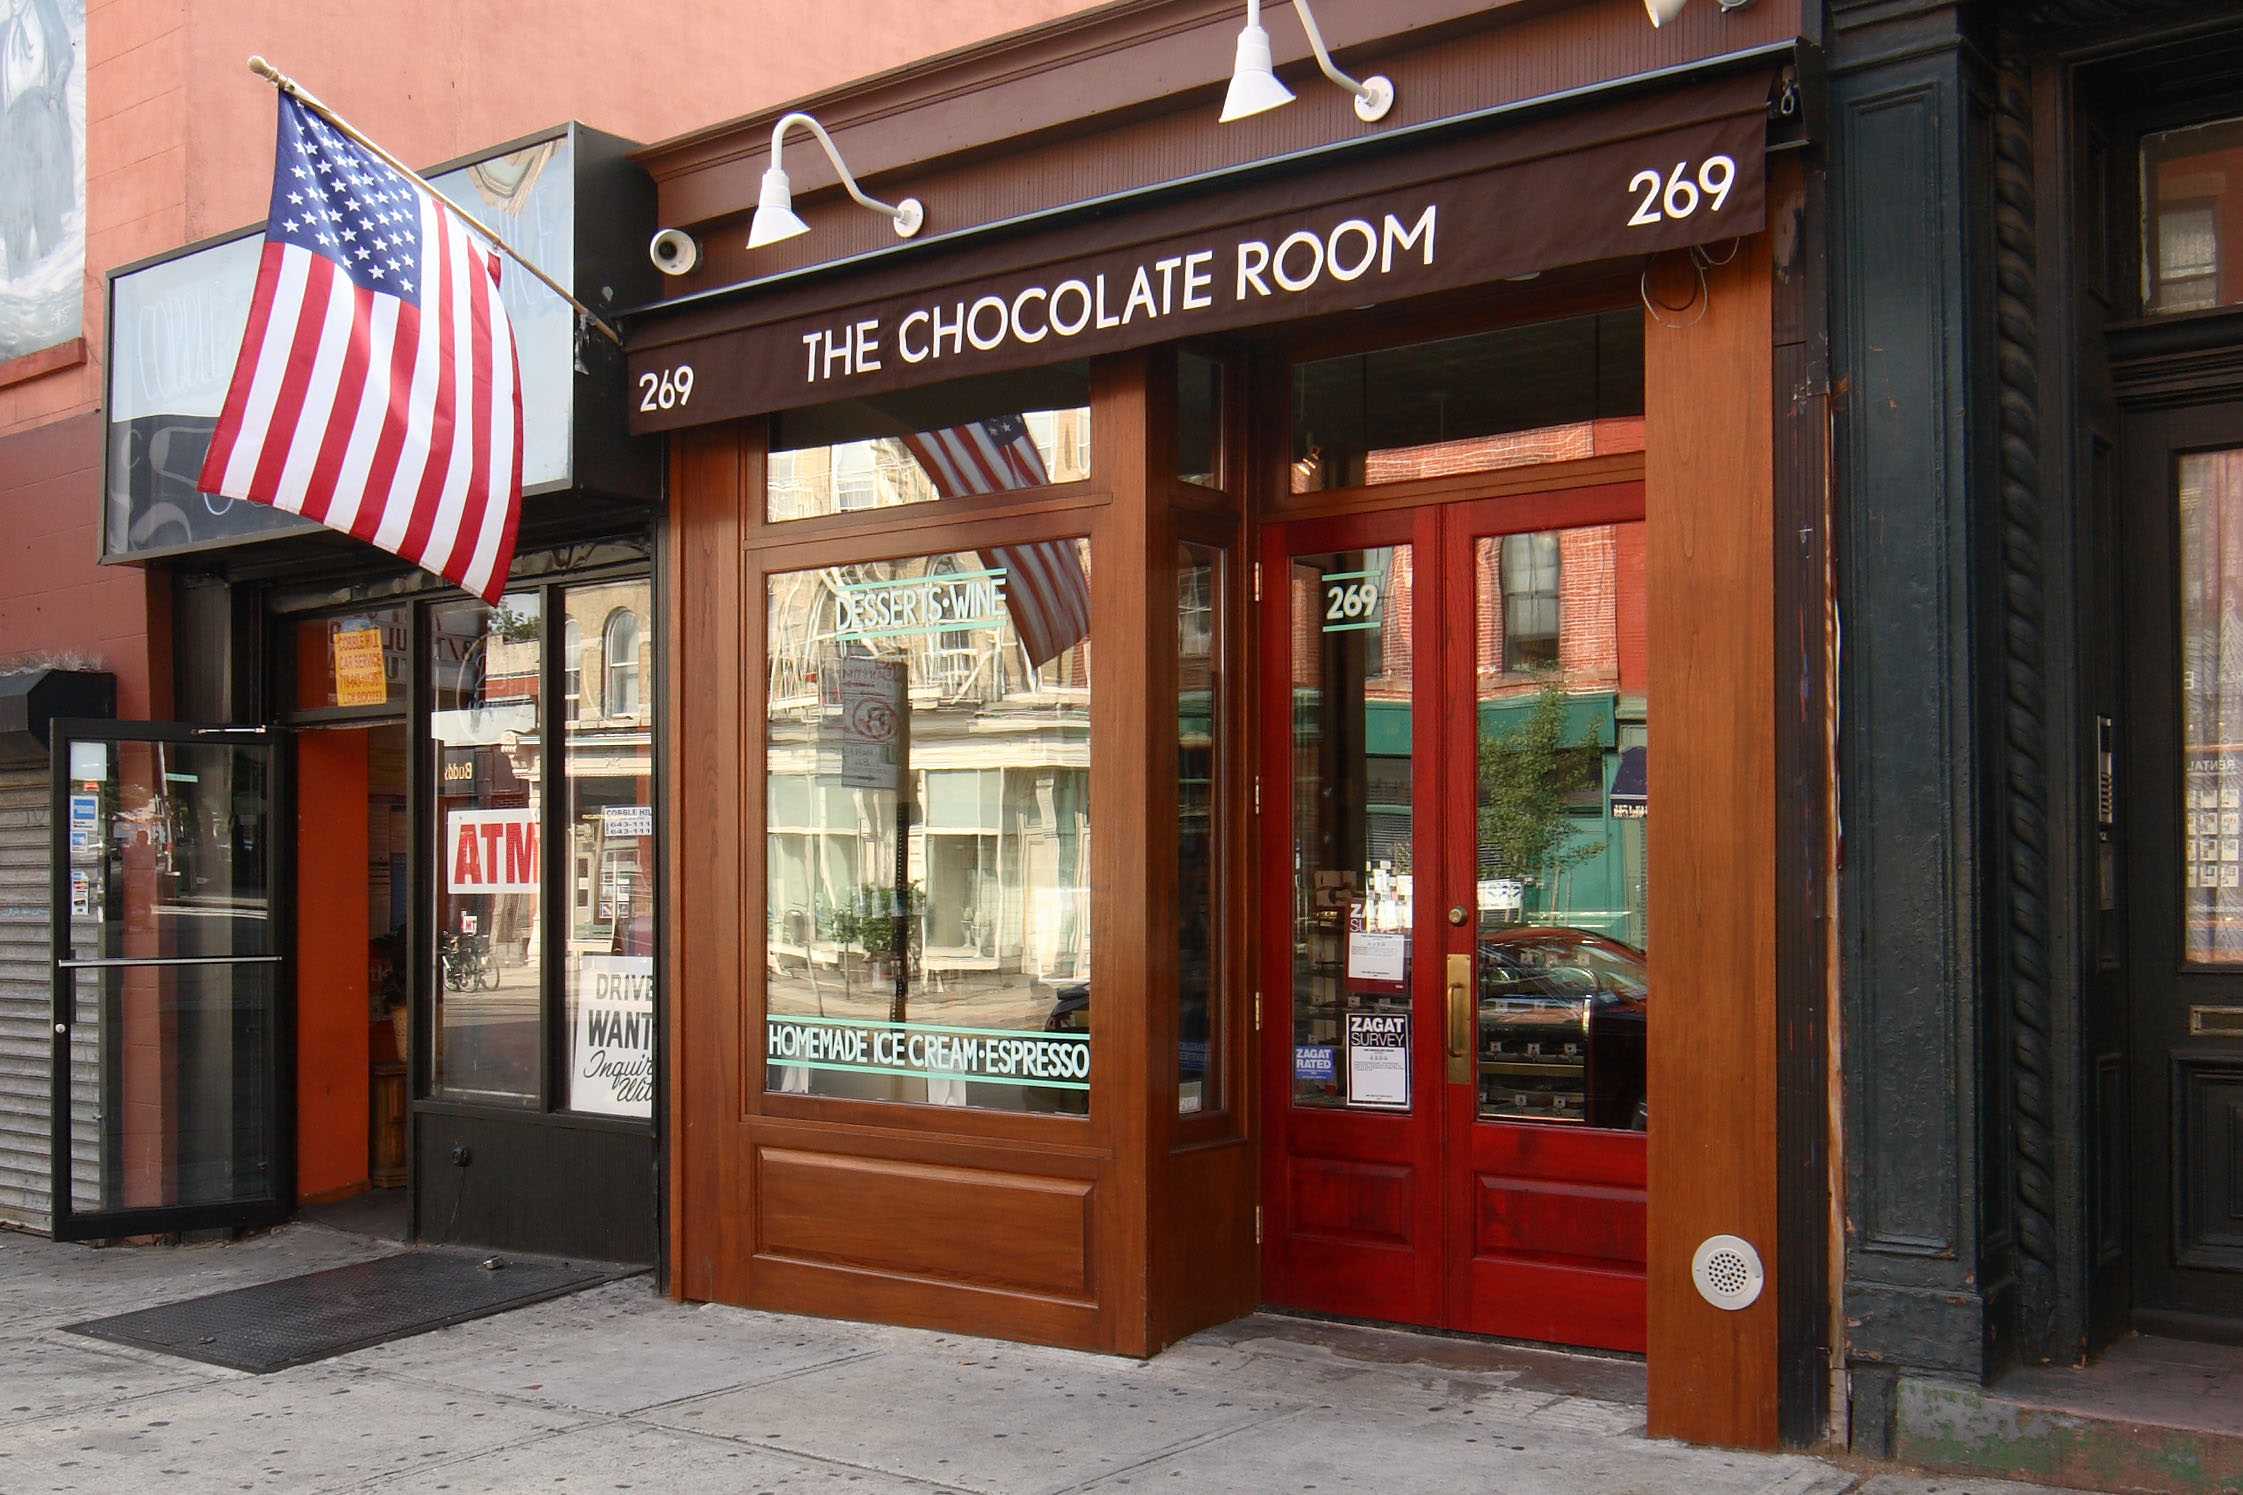 The Chocolate Room: Un endroit pour les mordus de chocolat